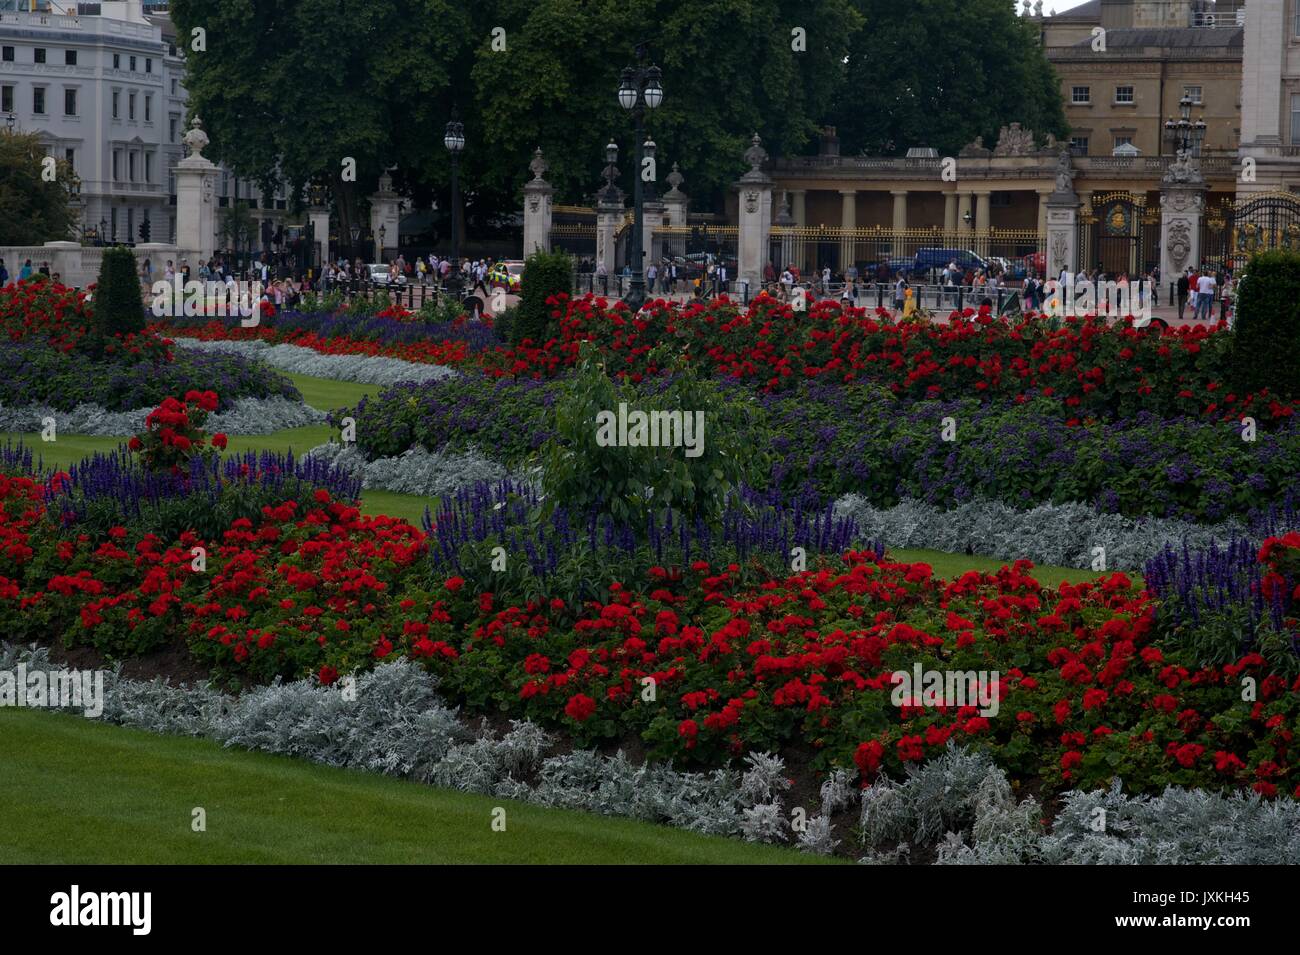 Buckingham Palace Stock Photo